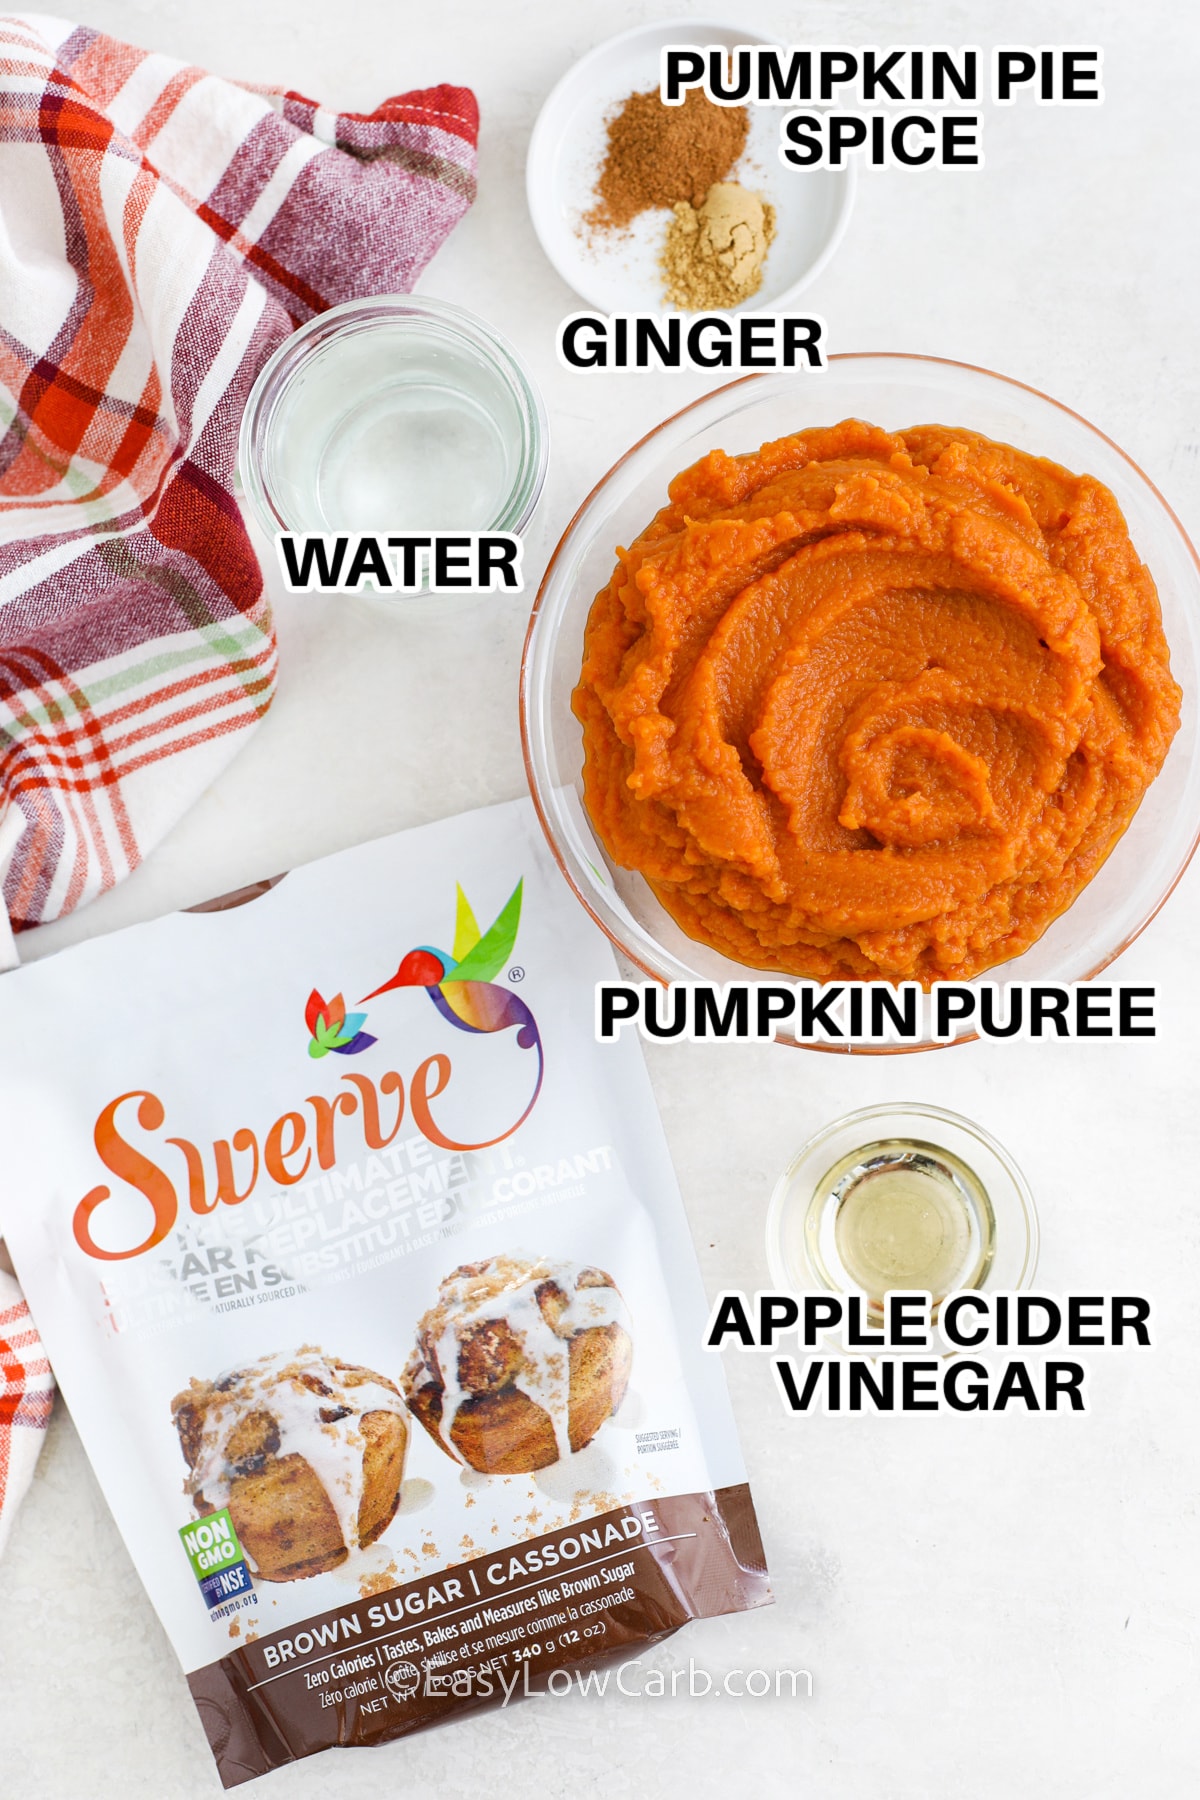 ingredients for pumpkin butter including pumpkin pie spice, ginger, pumpkin puree, apple cider vinegar, and swerve